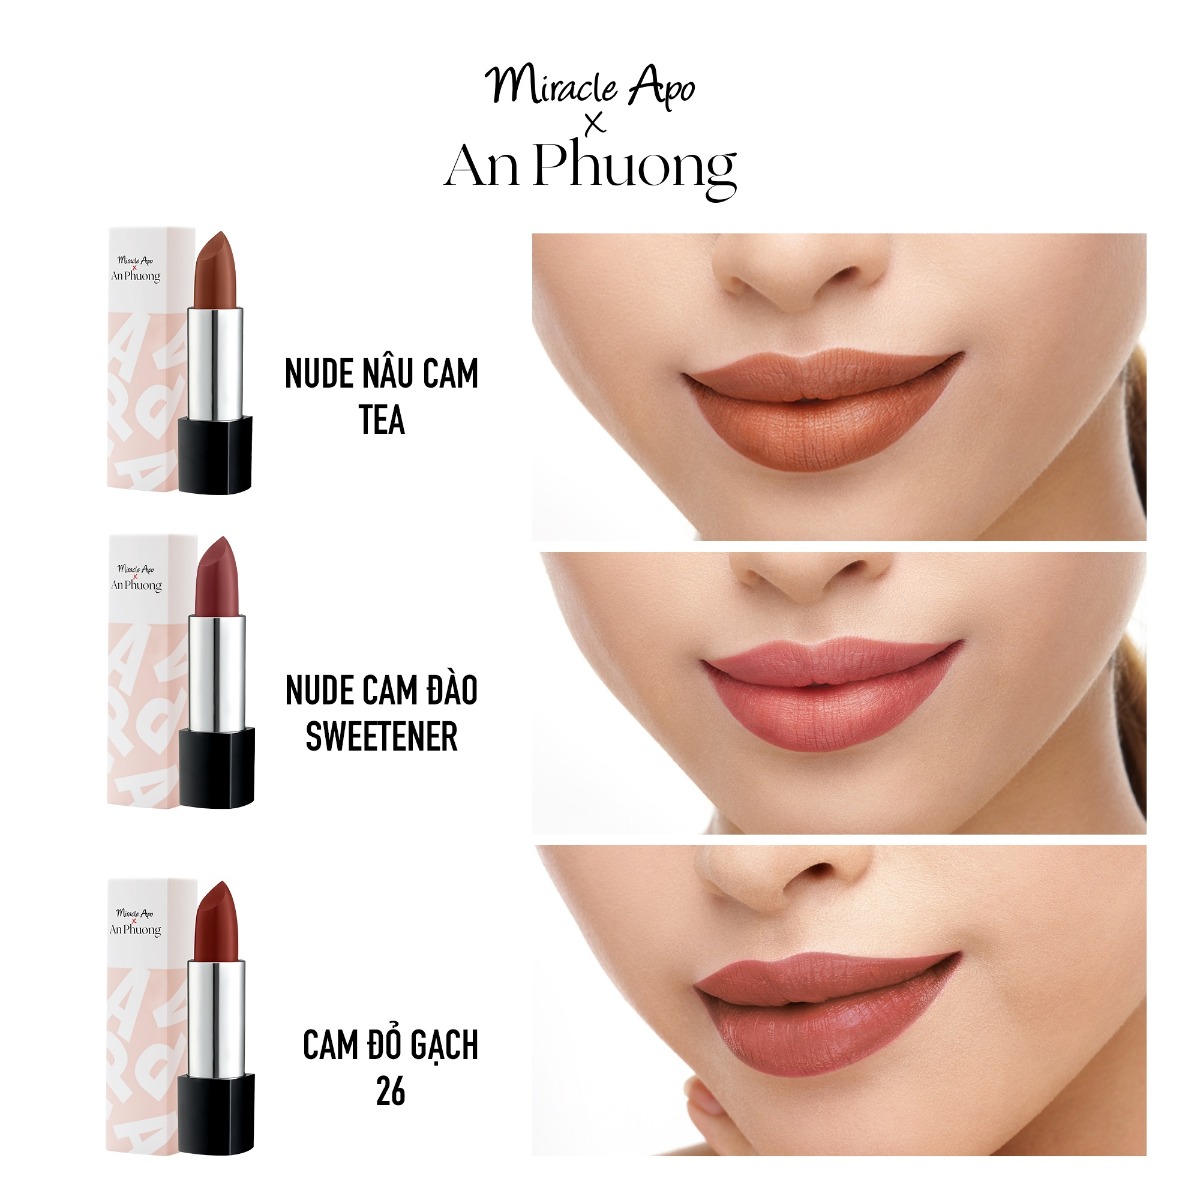 Son Thỏi Miracle Apo x An Phương Holiday Collection Lipstick bao gồm 3 tone màu